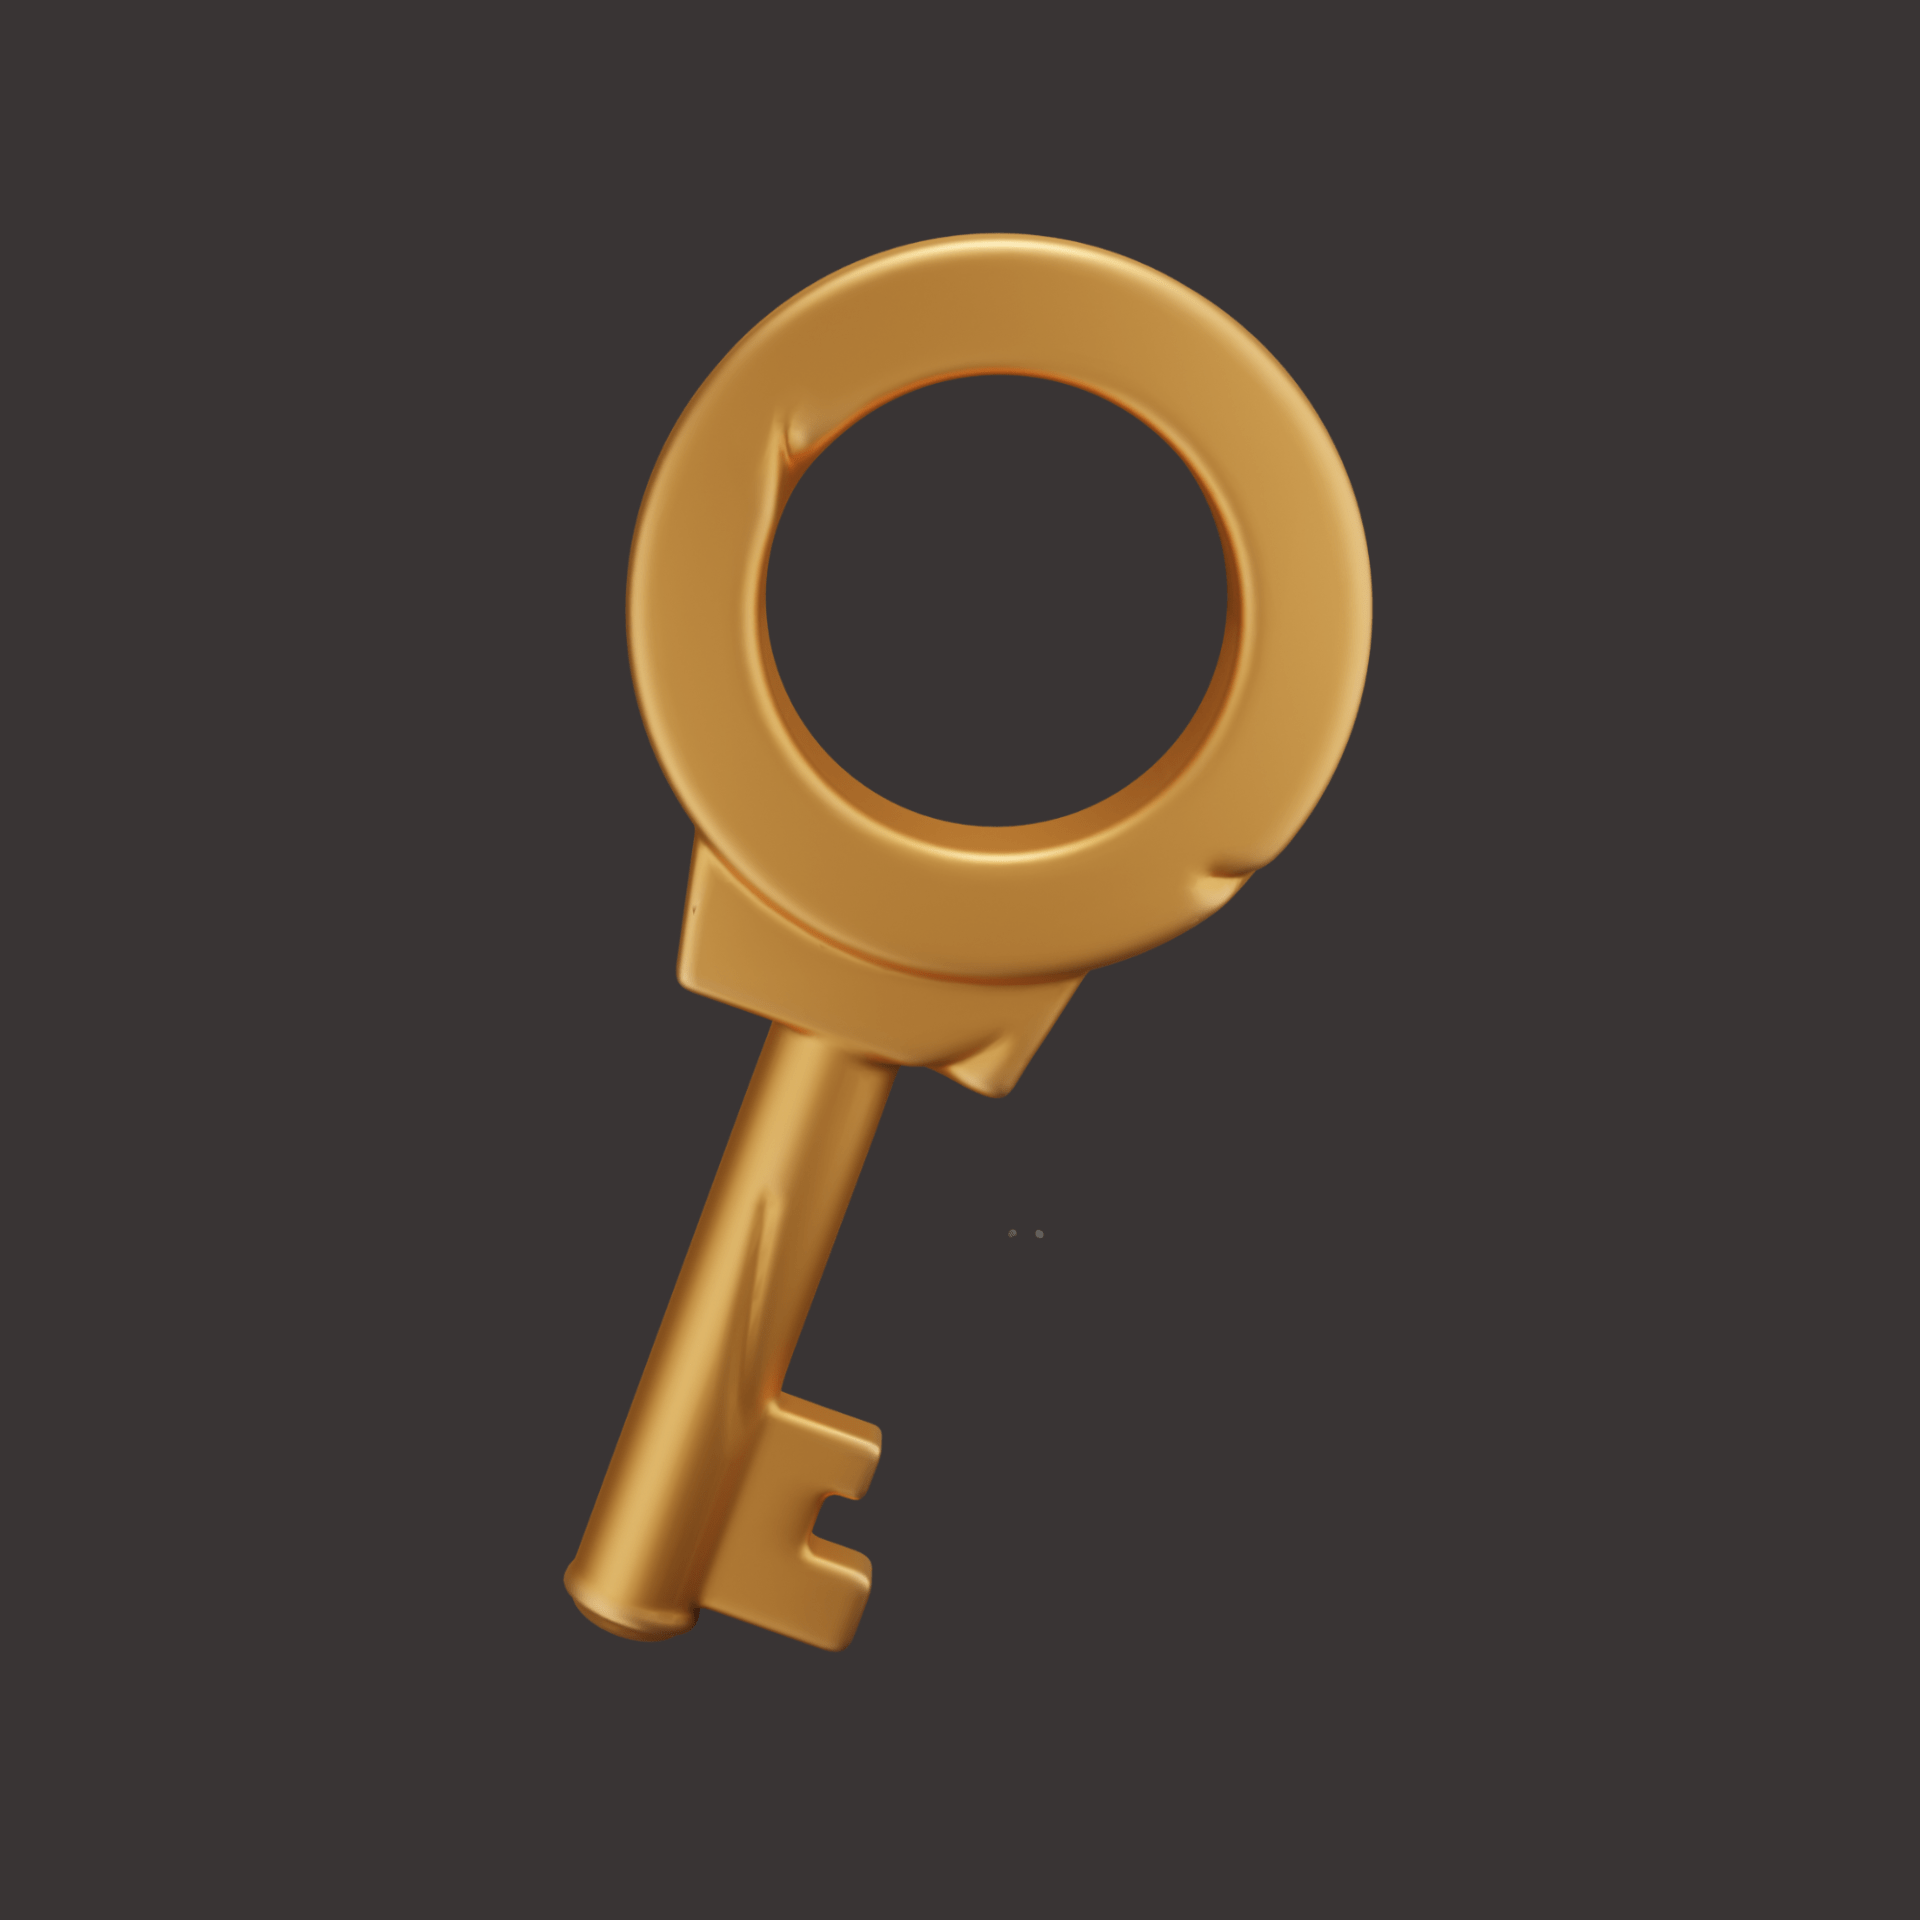 rpg-game-lock-key-padlock-key-game-ui-assets-3d-icon